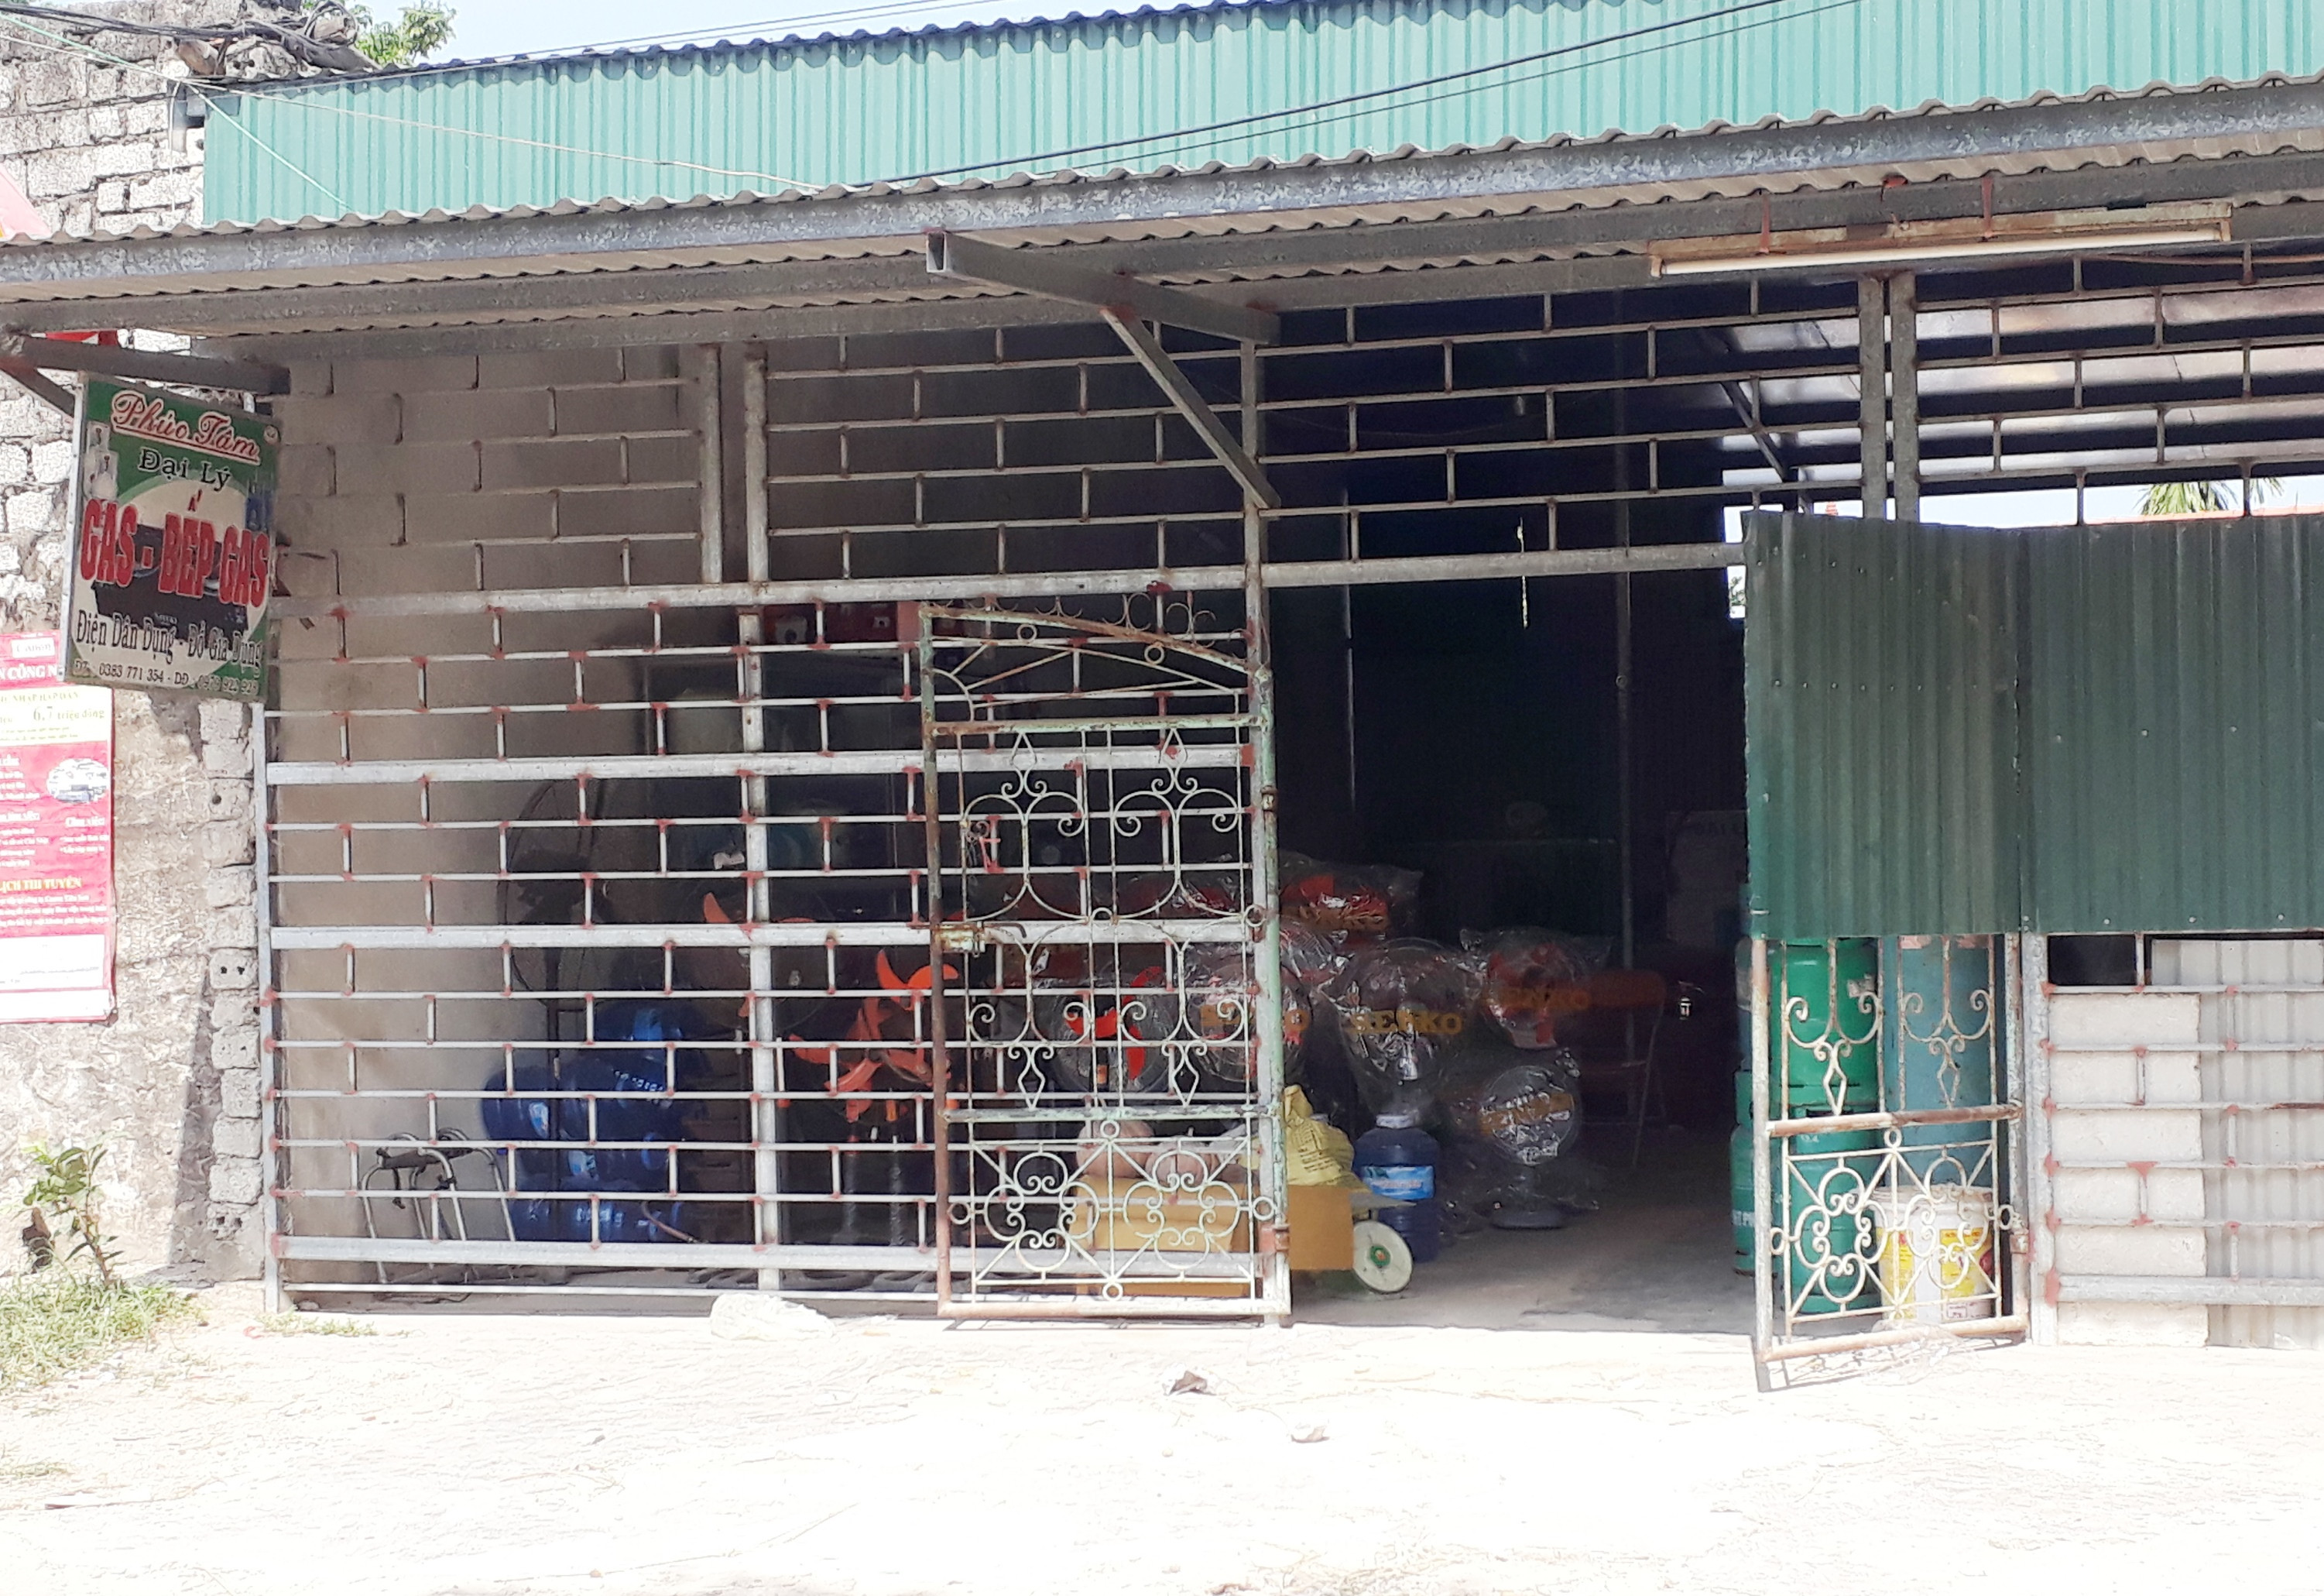 Cơ sở kinh doanh ga Phúc Tâm ở xóm 4, xã Quỳnh Hoa (Quỳnh Lưu) hiện chưa giấy phép hoạt động. Ảnh: Tân Bảo